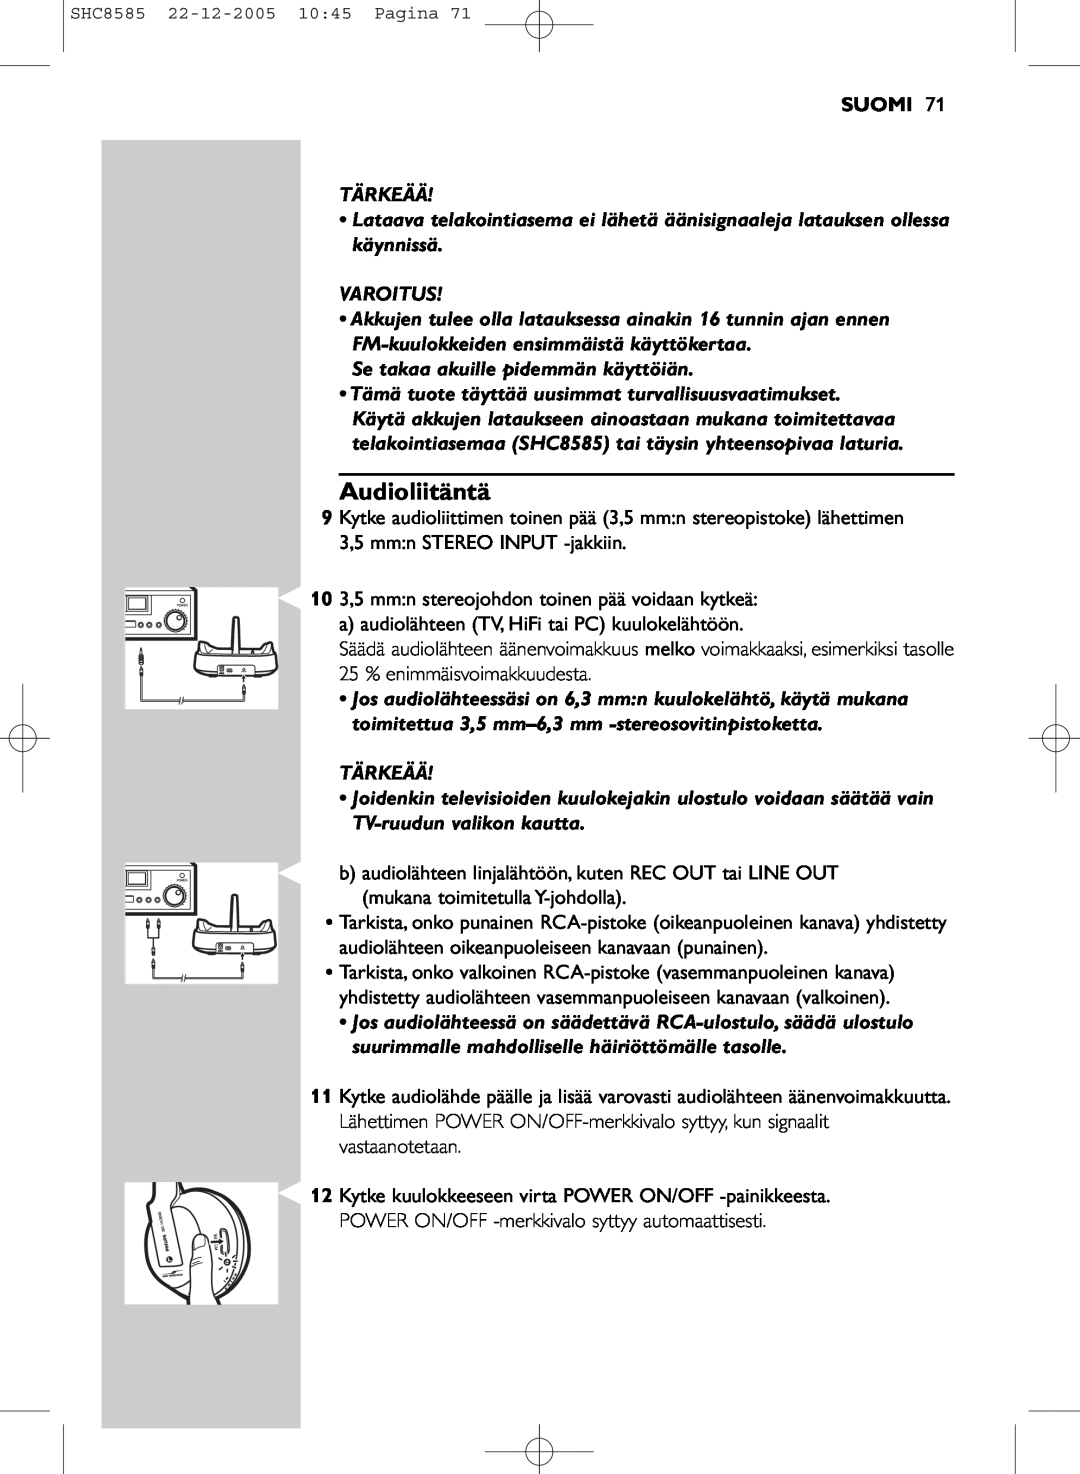 Philips SHC8585/05 manual Audioliitäntä, Suomi 